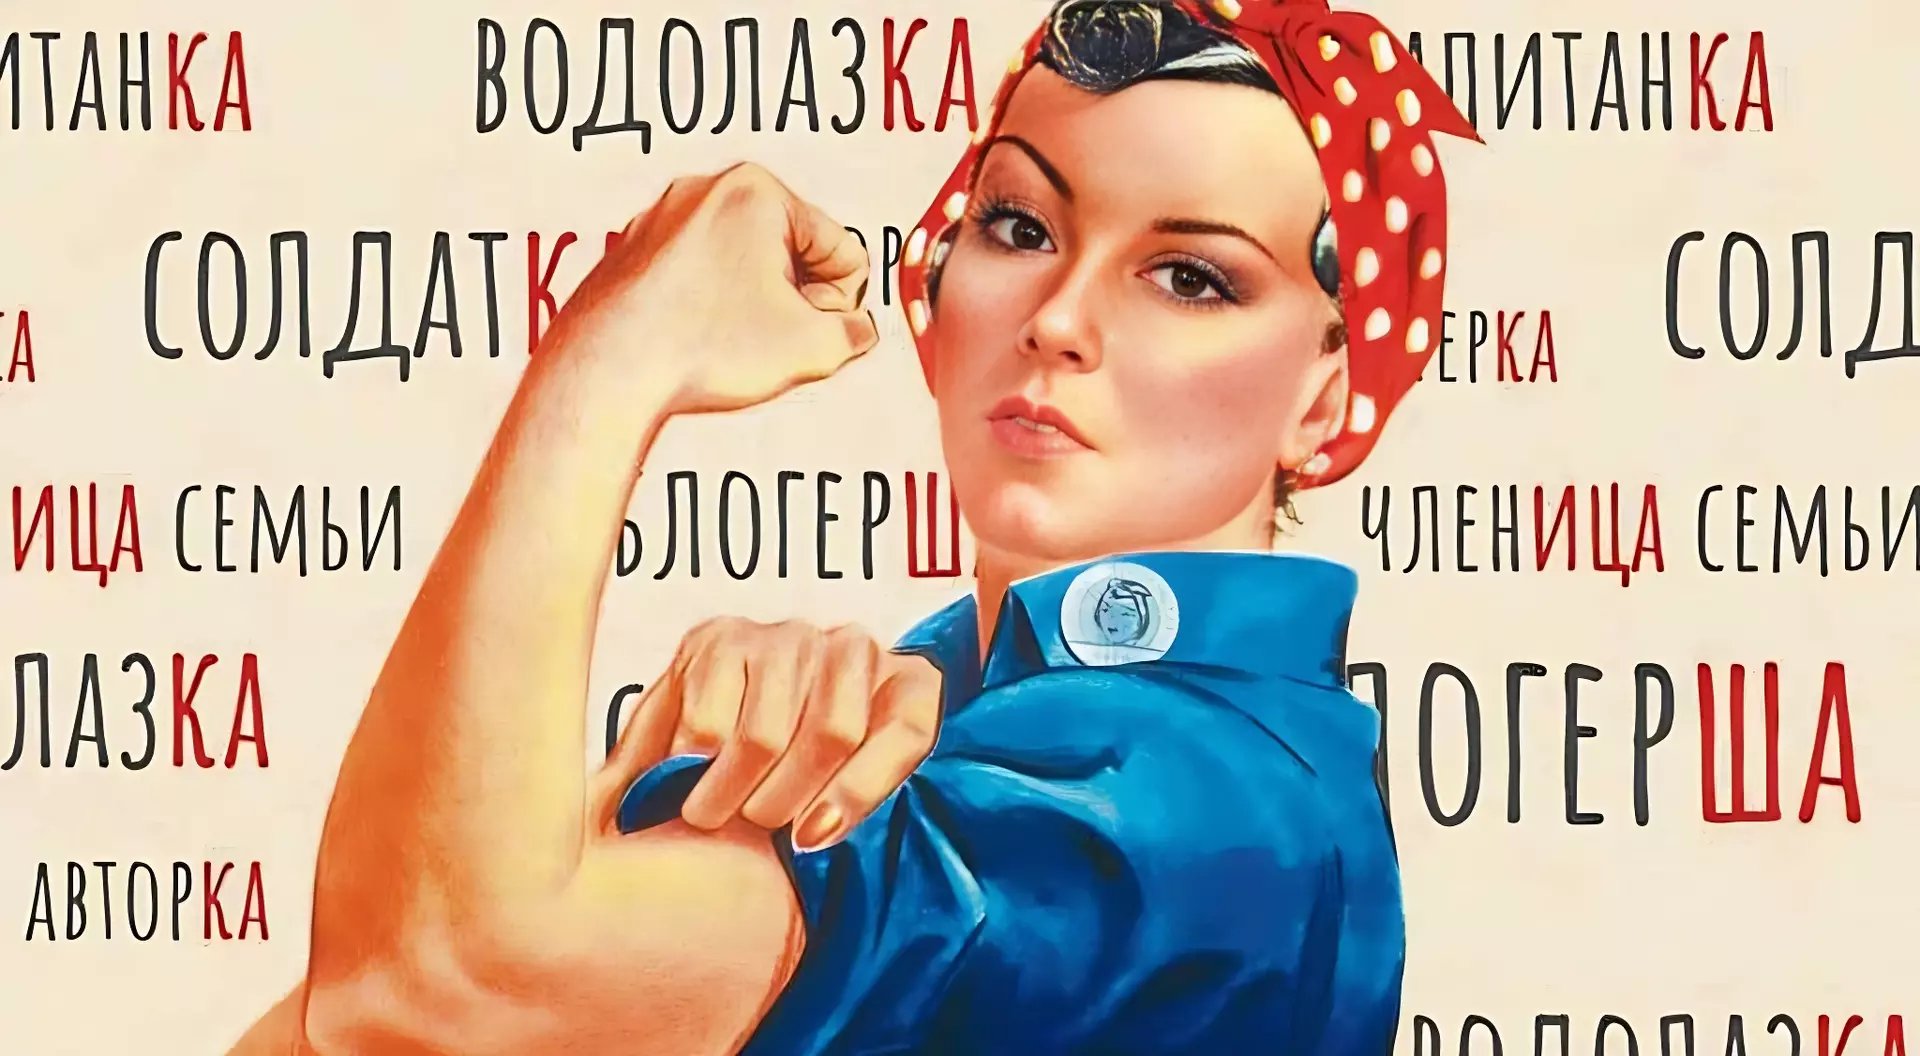 Феминитивы. Феминитивы картинки. Феминитивы на советских плакатах. Феминитивы примеры. Феминитивы какие